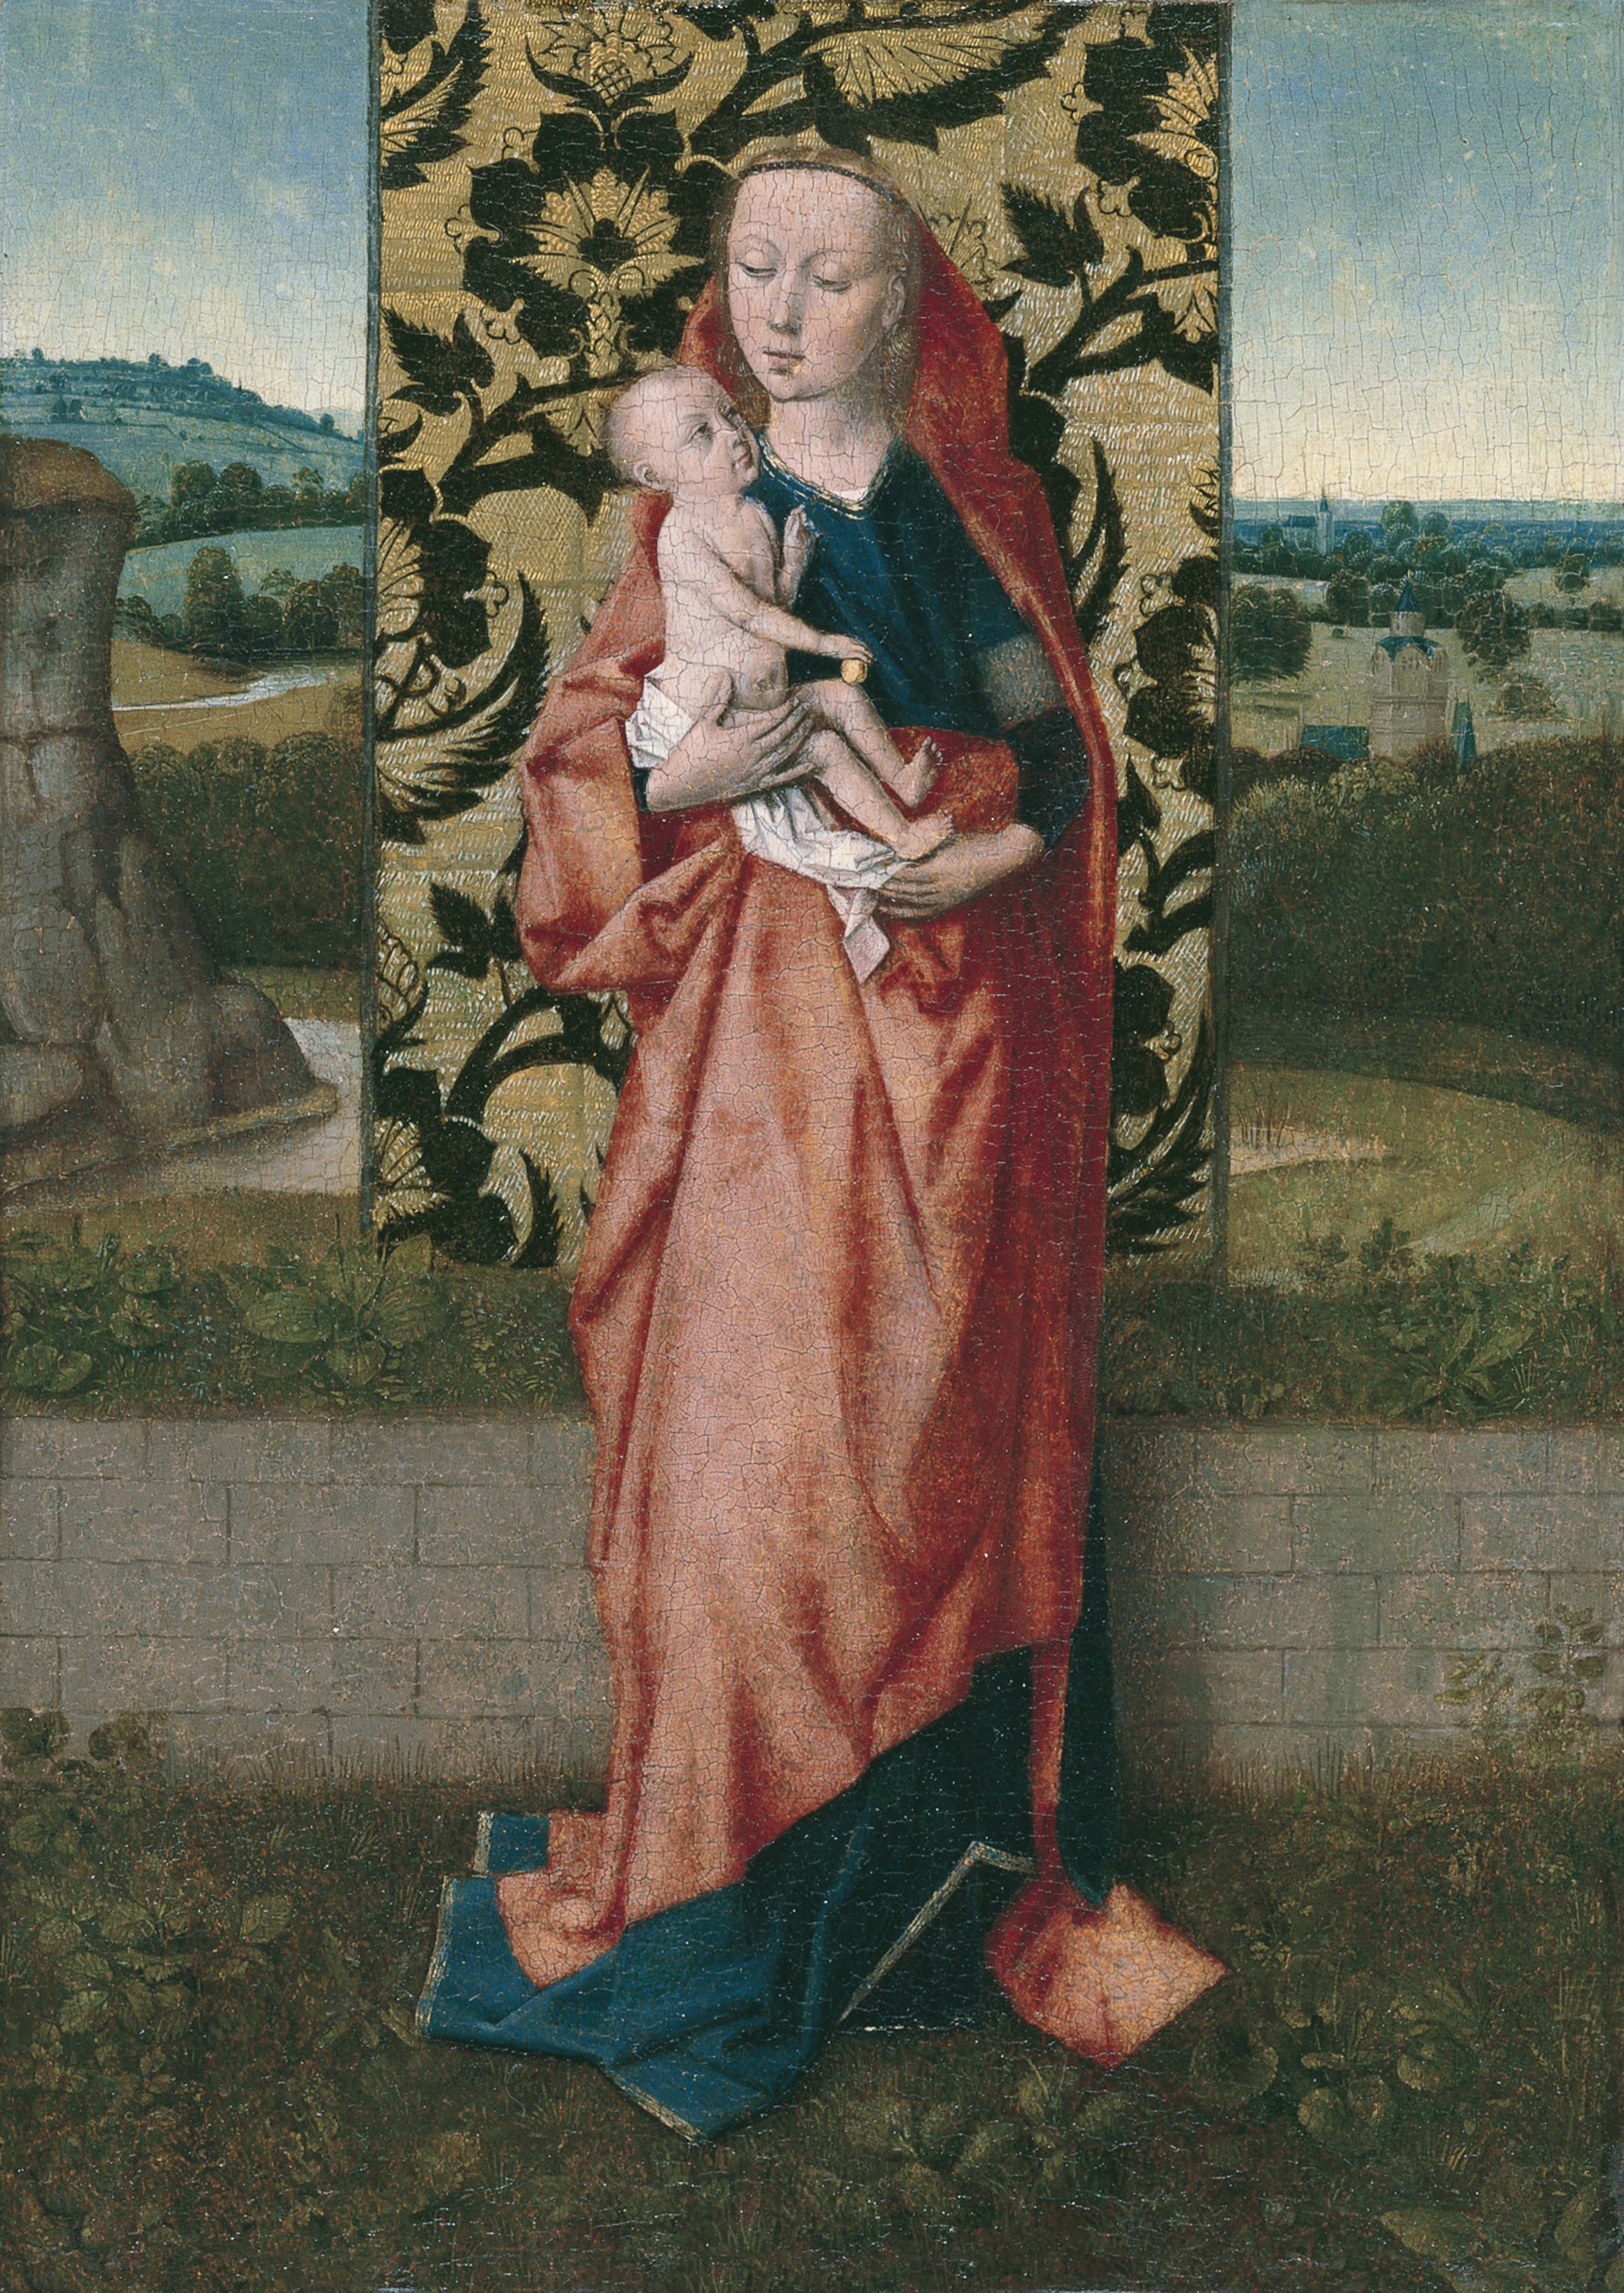 The Virgin and Child. La Virgen con el Niño, c. 1465